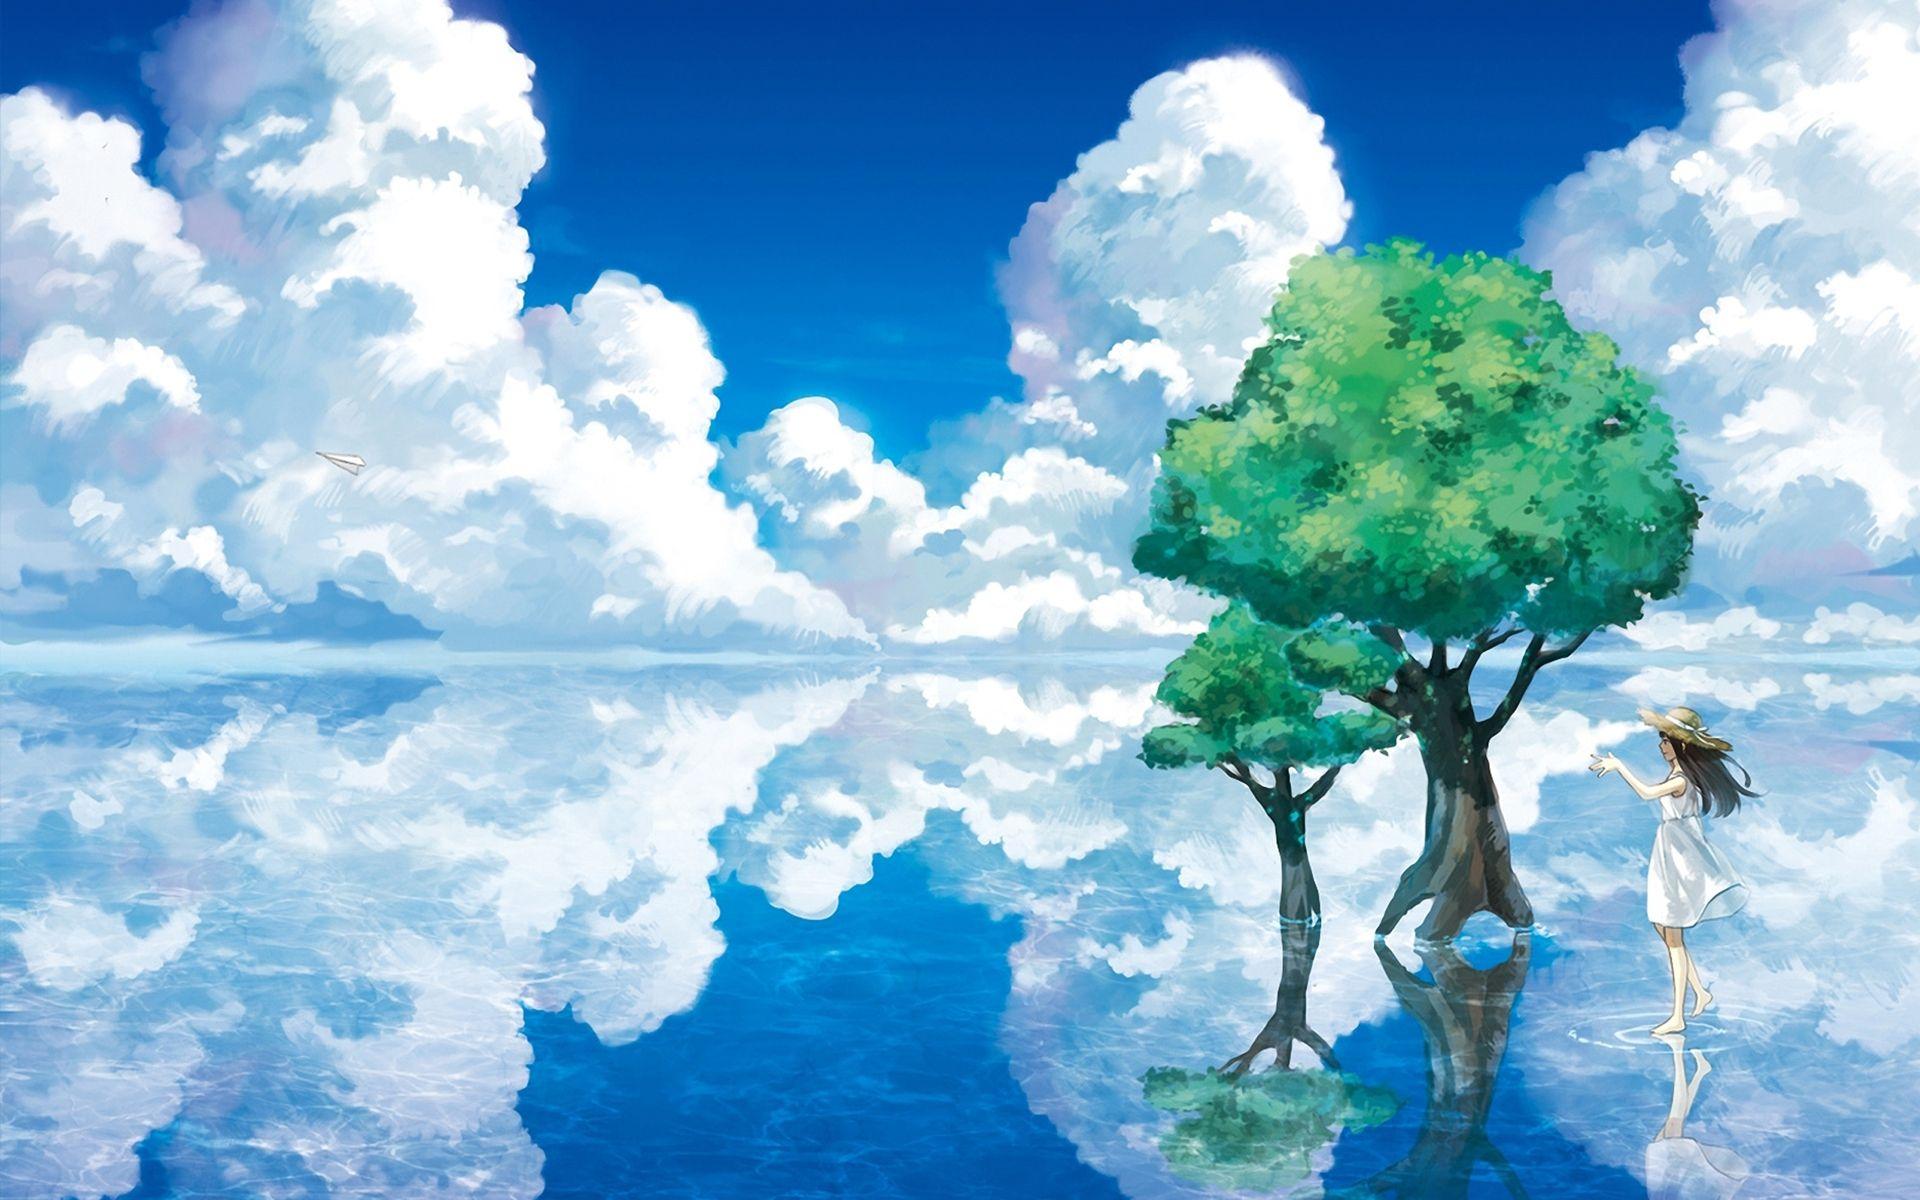 Anime Landscape Wallpaperx1200. landscape